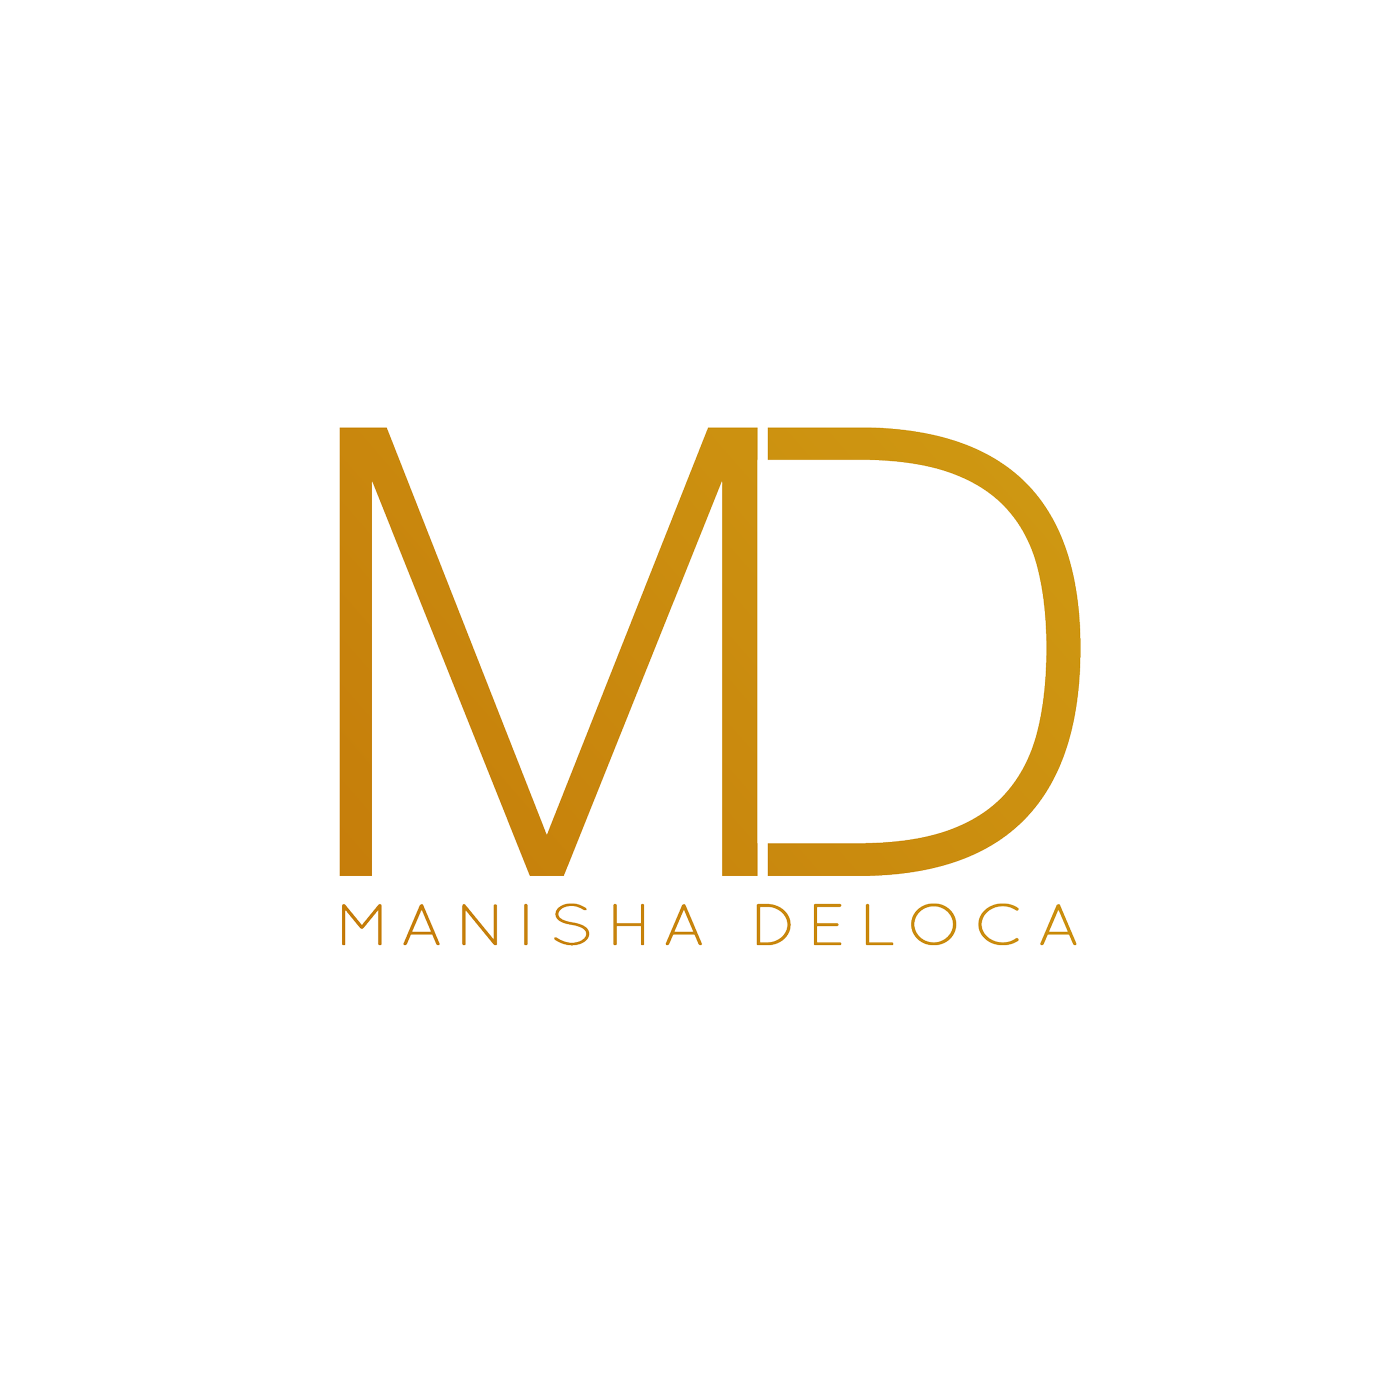 Manisha Deloca